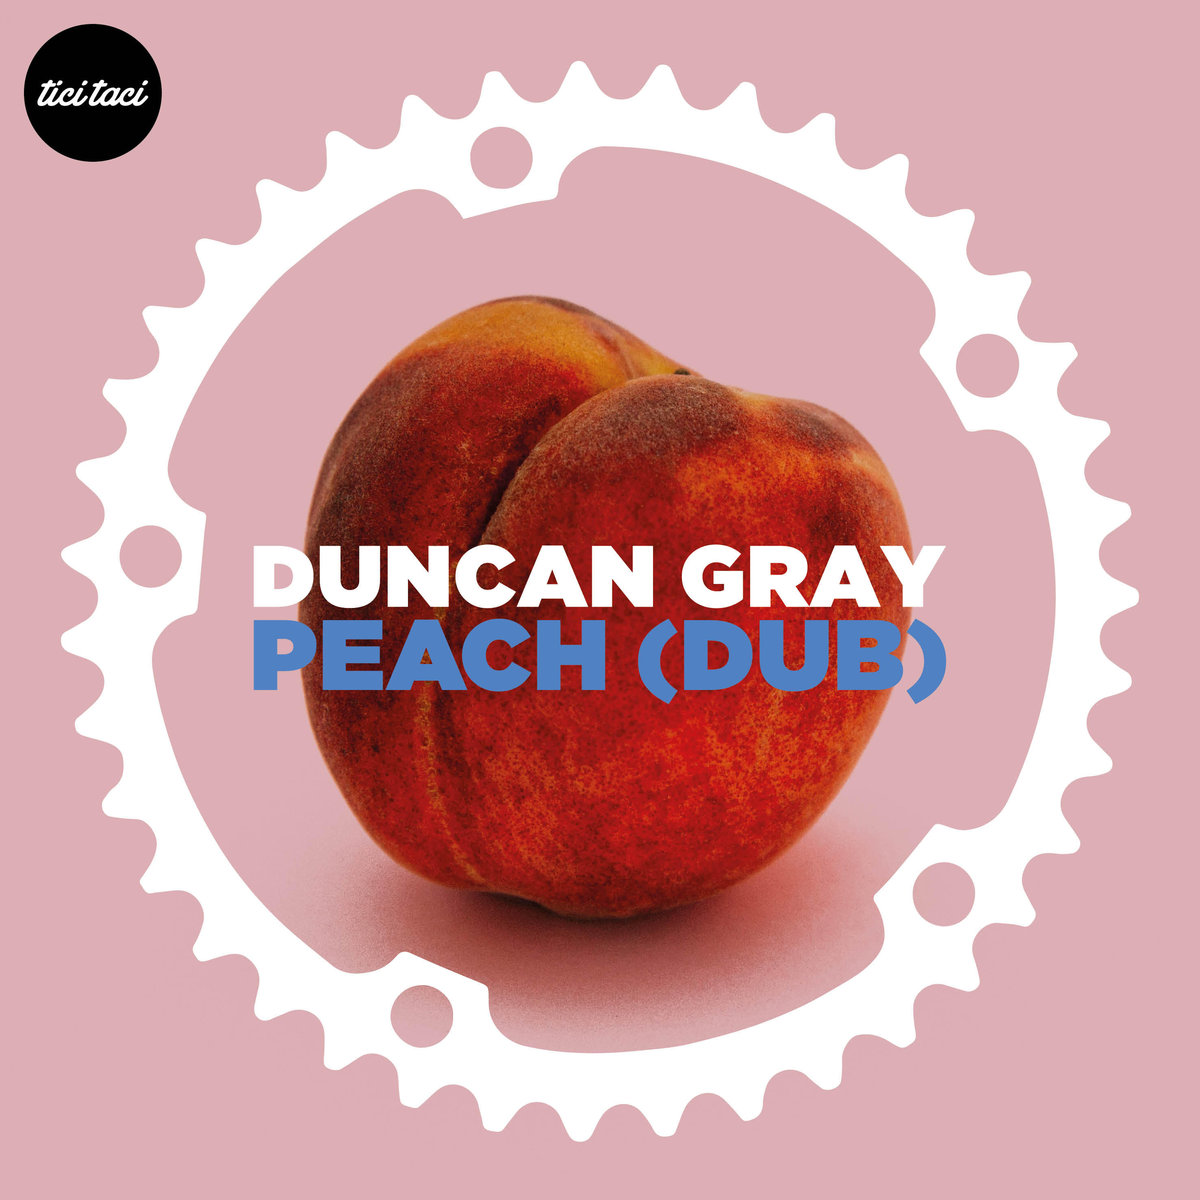 Duncan Gray - Peach (Dub) [2019-09-23] (tici taci)